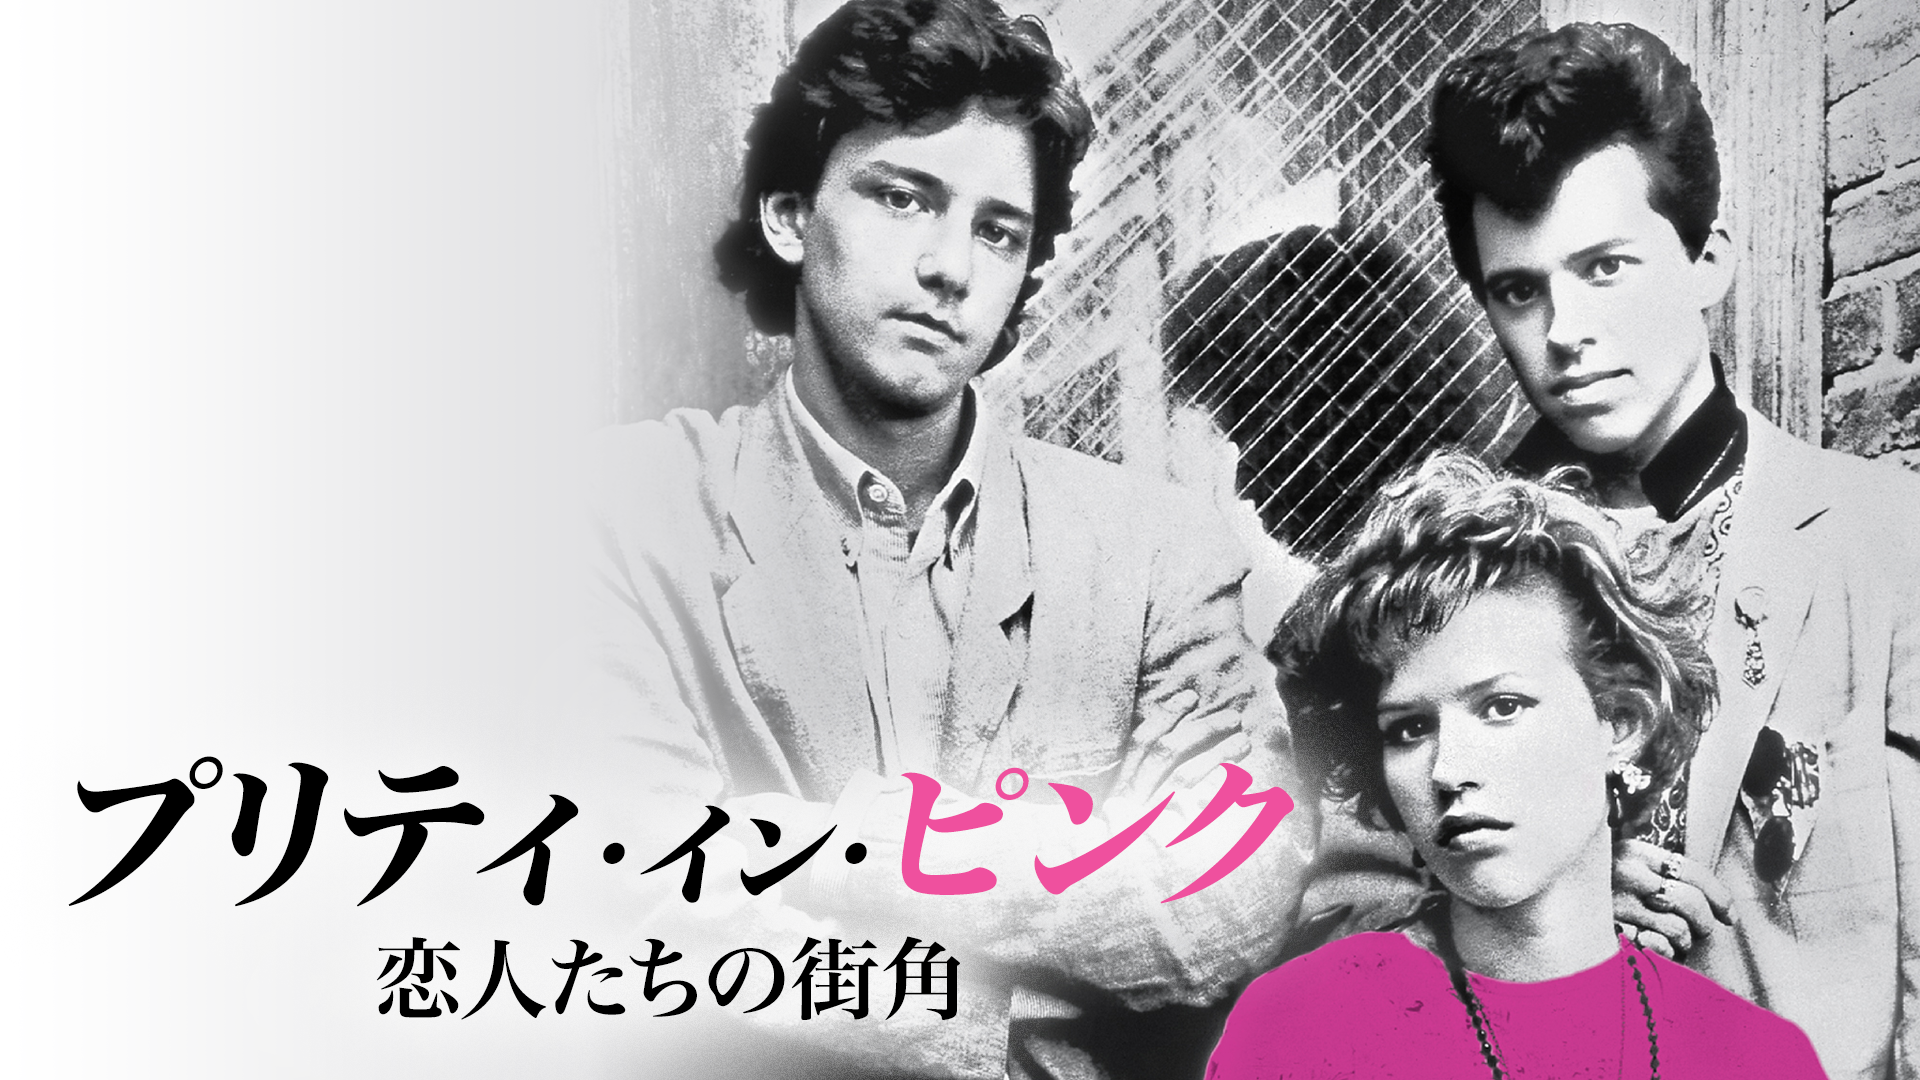 プリティ・イン・ピンク／恋人たちの街角(洋画 / 1986) - 動画配信 | U